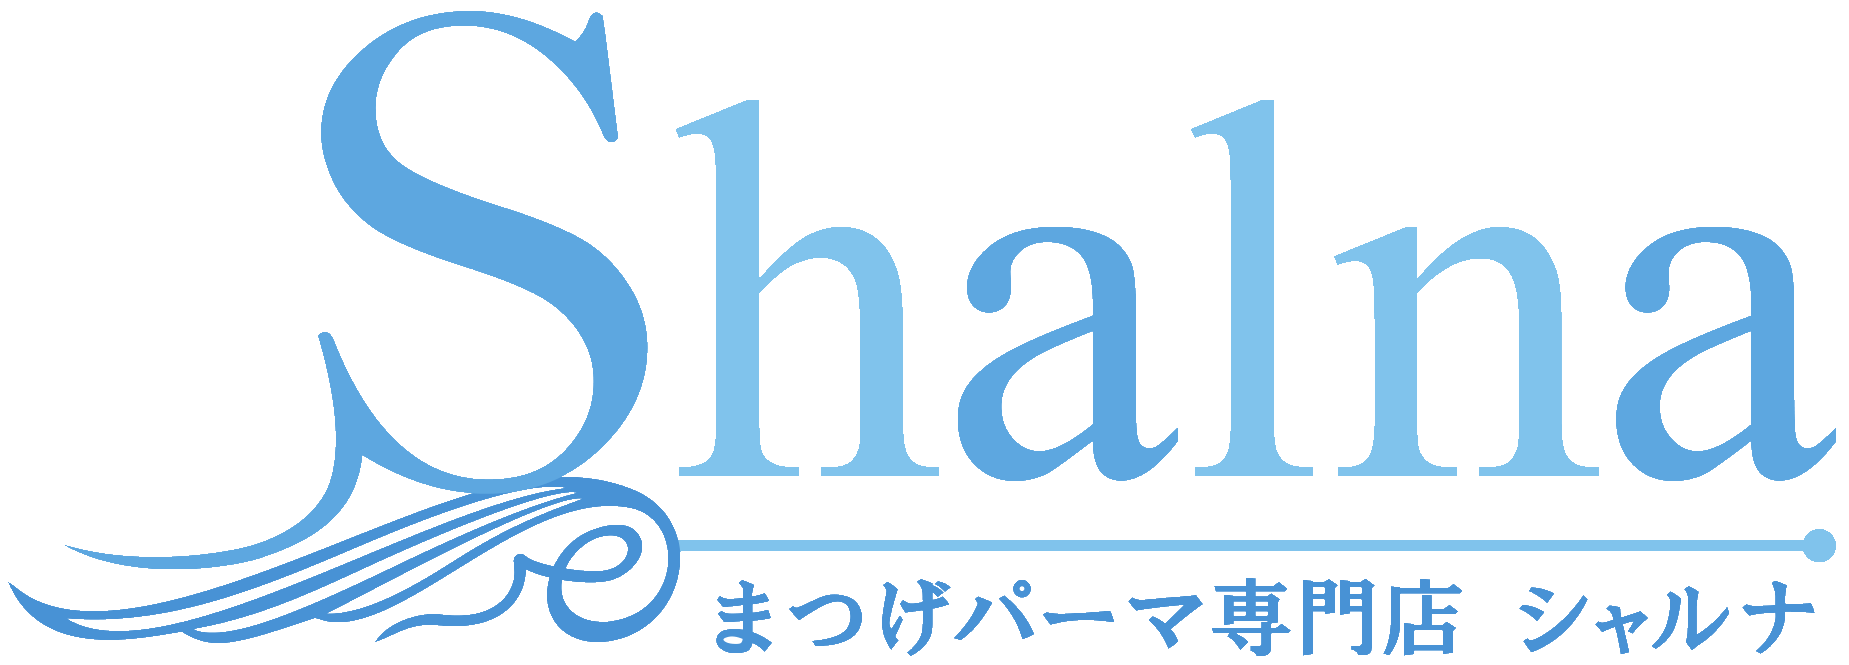 まつげパーマ専門店Shalna(シャルナ)